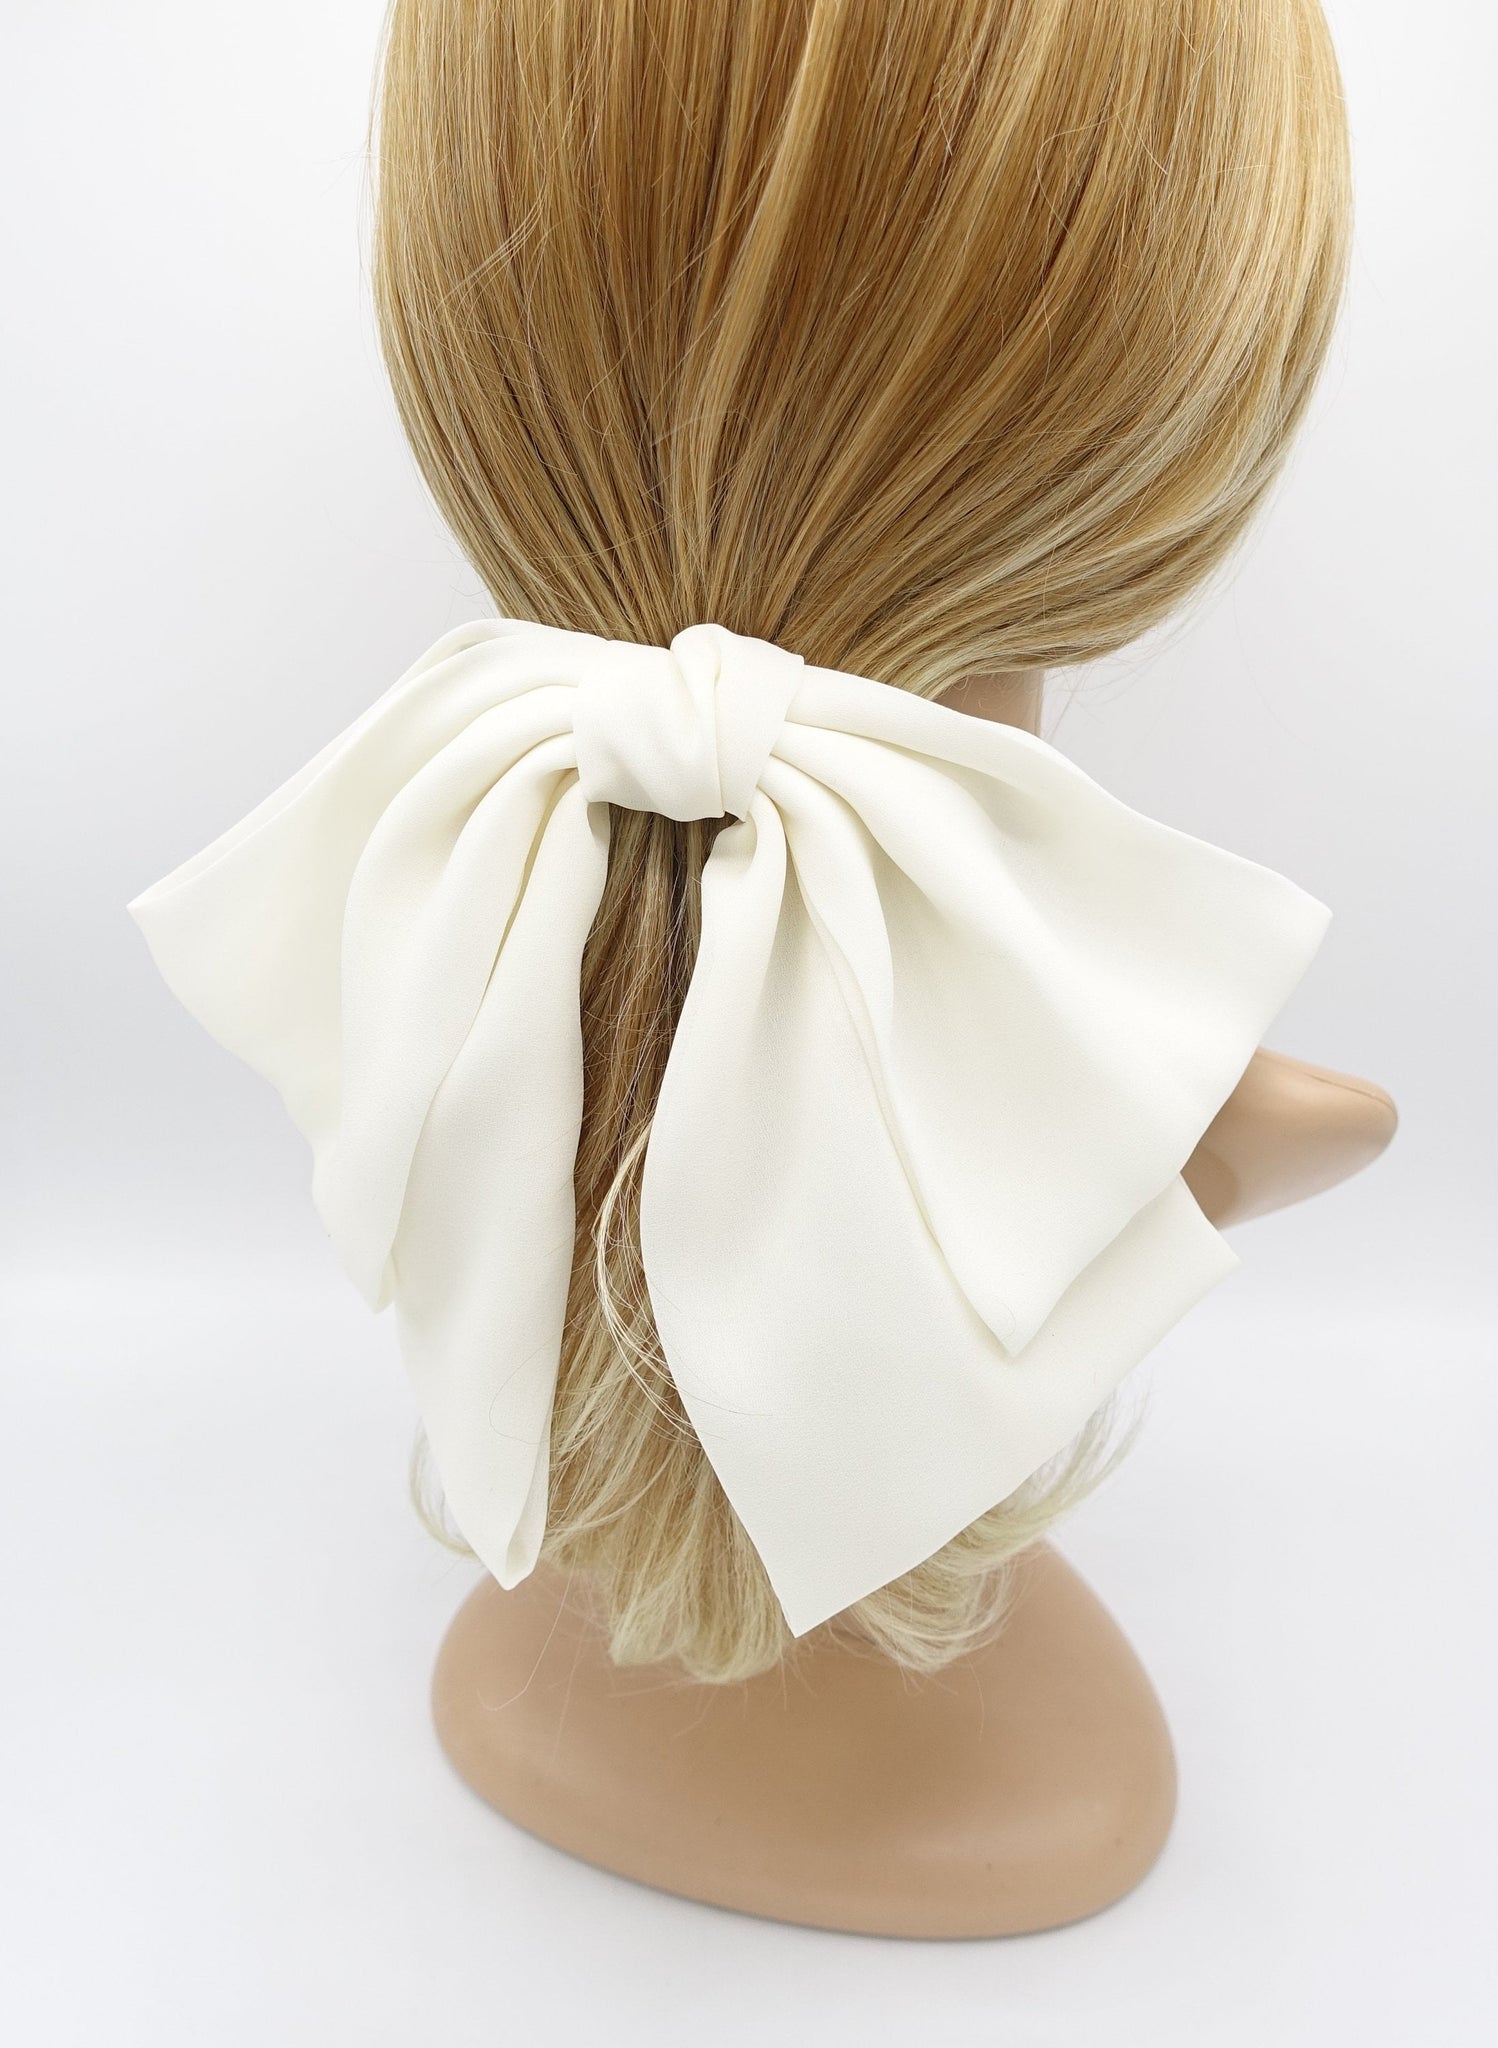 veryshine.com Barrette (Bow) Cream white big hair bow, drape hair bow, chiffon hair bow for women